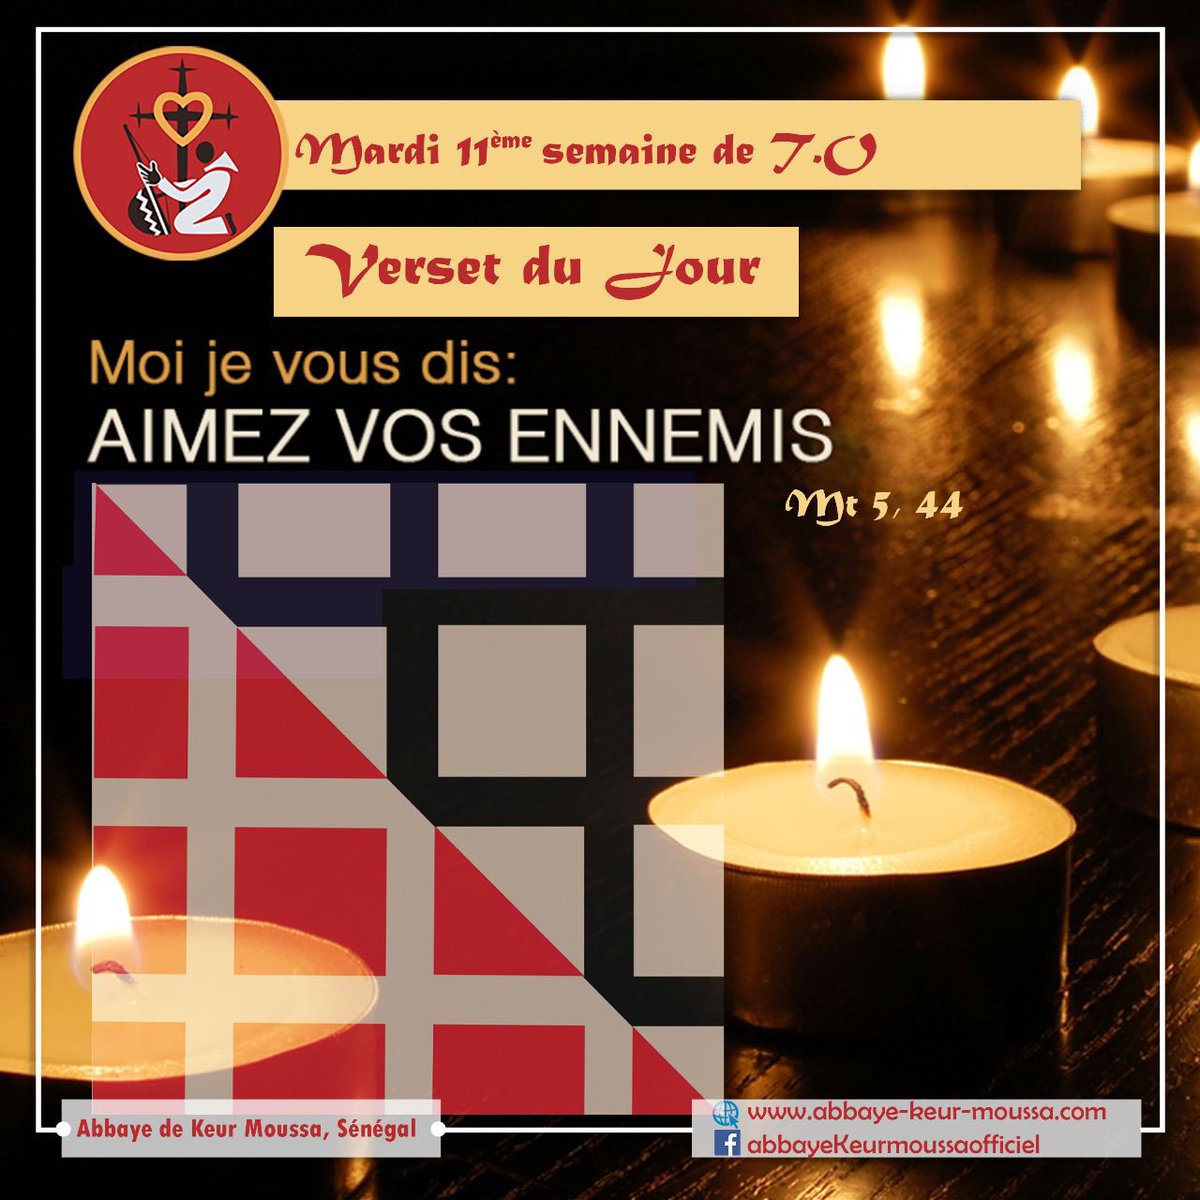 @abbayedekeurmoussa #abbayedekeurmoussa #versetdujour 
« #Aimez vos #ennemis, et #priez pour ceux qui vous persécutent, Mt 5,44